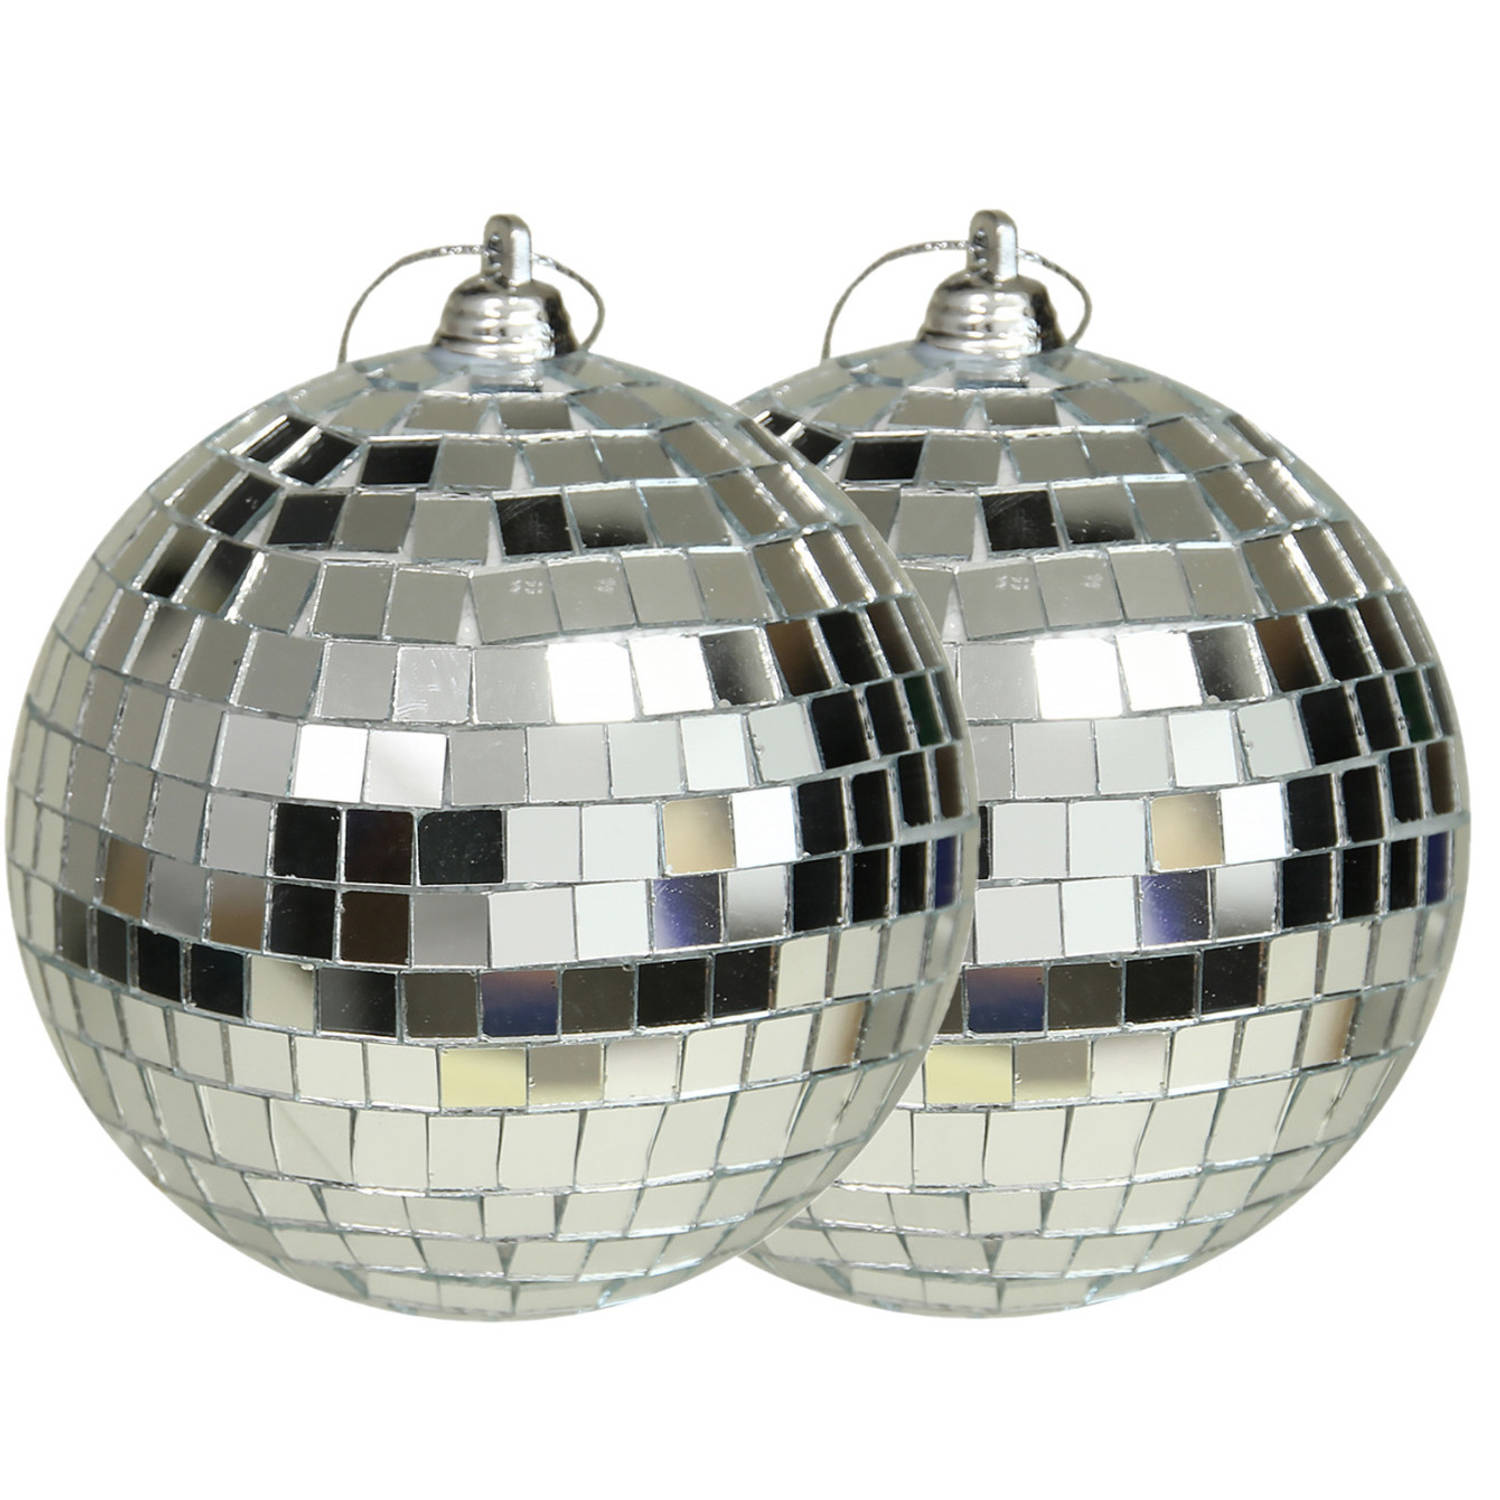 Othmar Decorations discobal kerstballen - 2x - zilver -10 cm -kunststof-spiegelbol